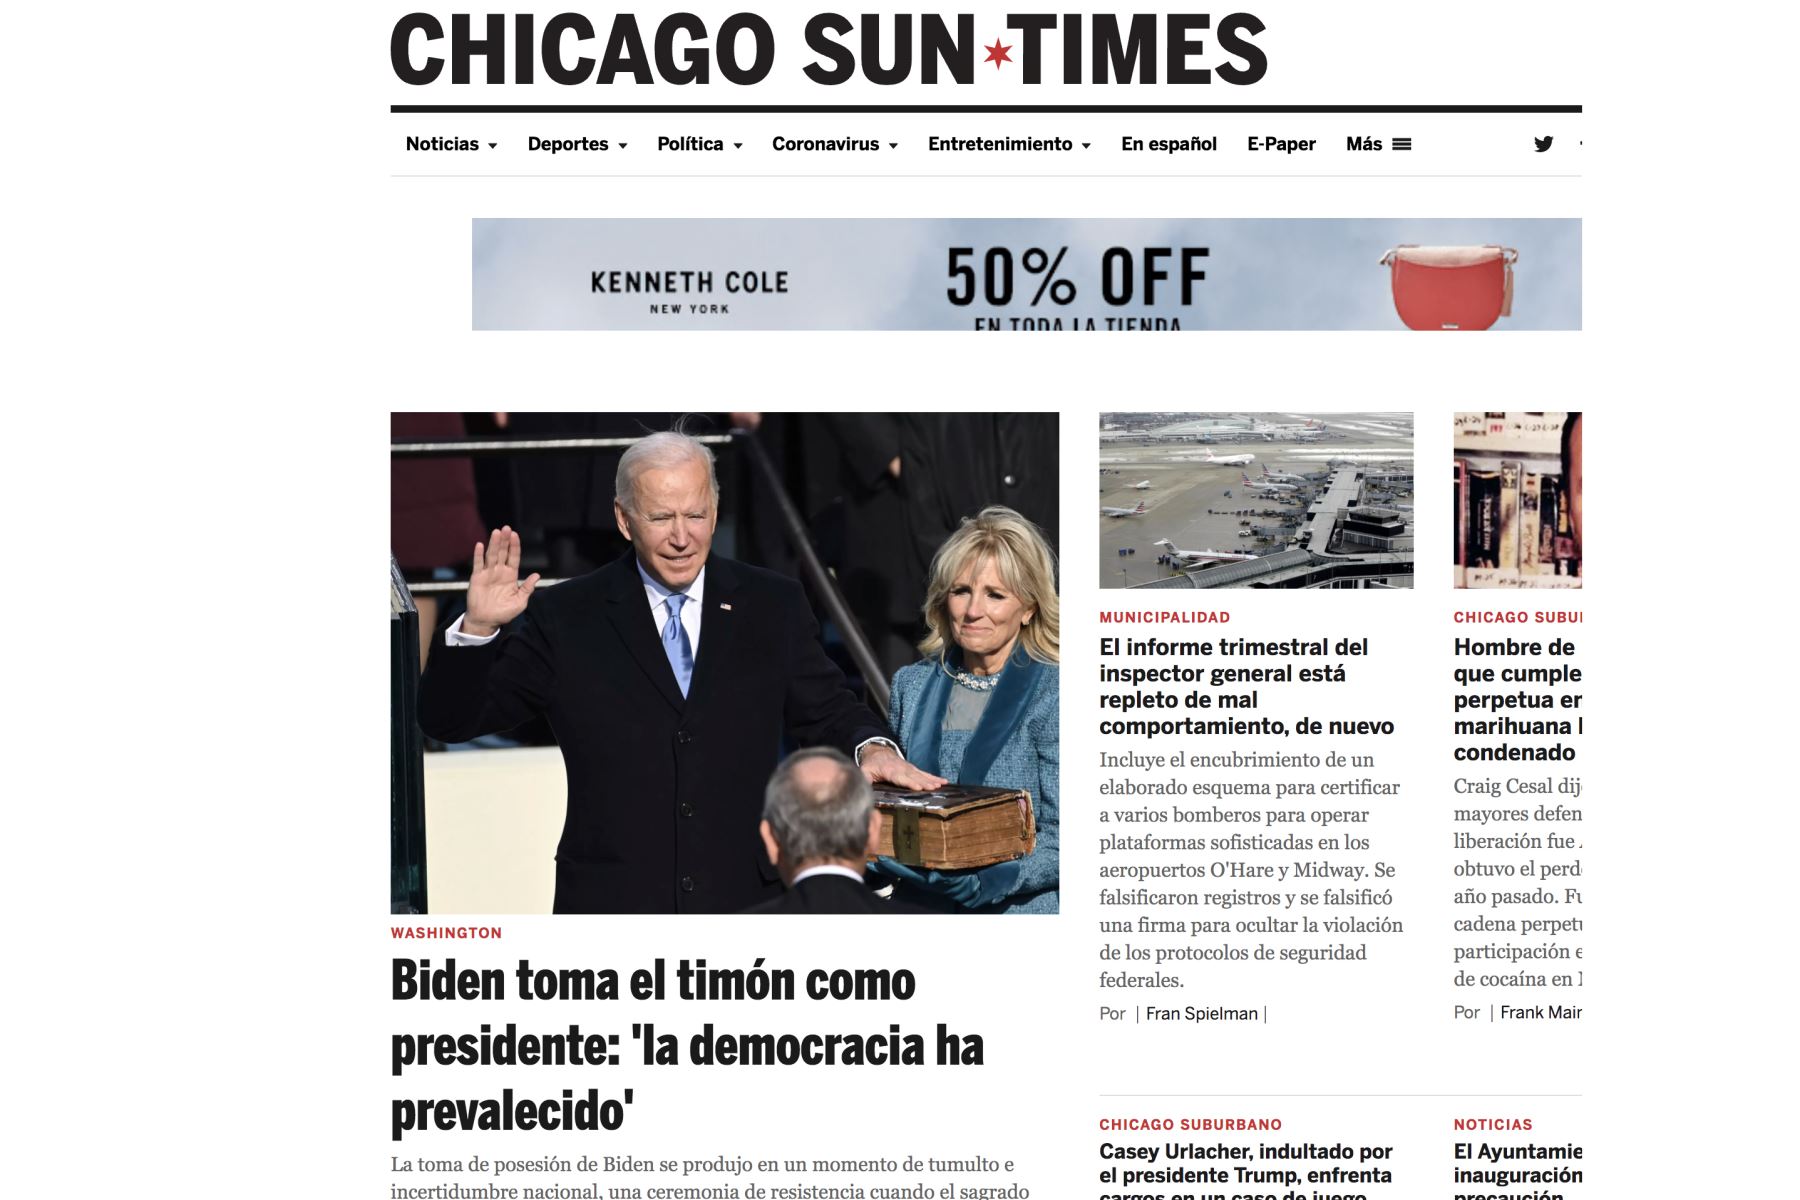 Así informa la prensa mundial sobre la histórica juramentación de Joe Biden, como presidente de los Estados Unidos. Chicago Sun Times.